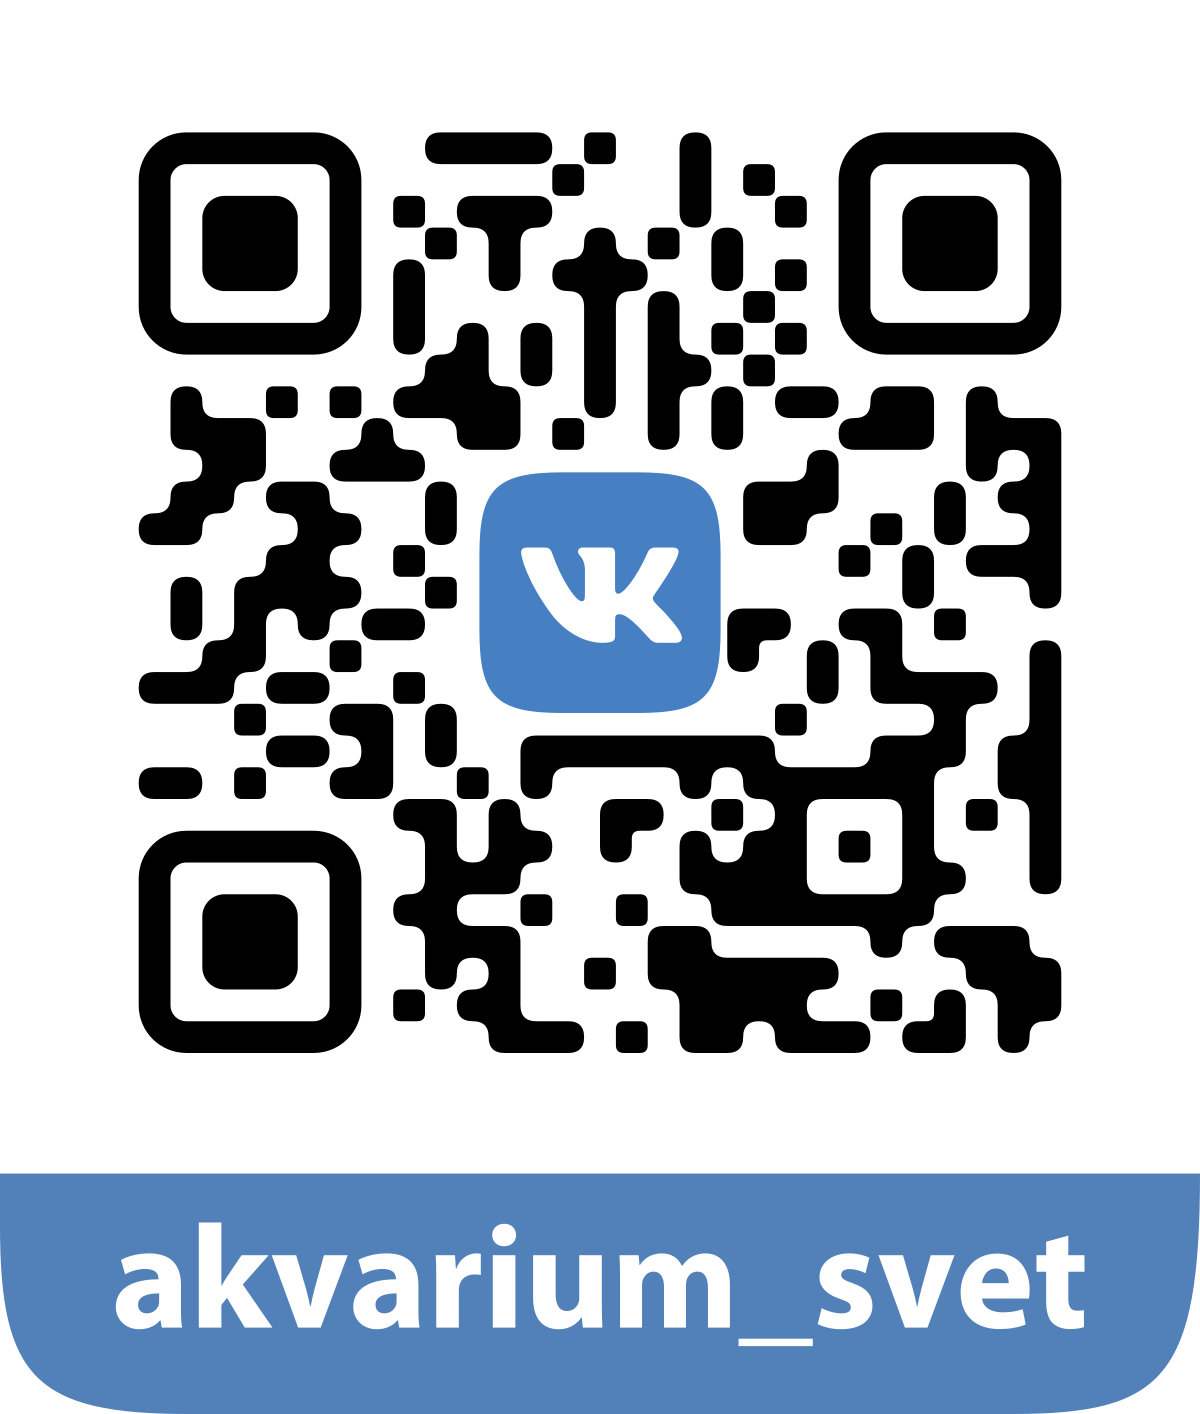 QR-код AkvariumSvet ВКонтакте